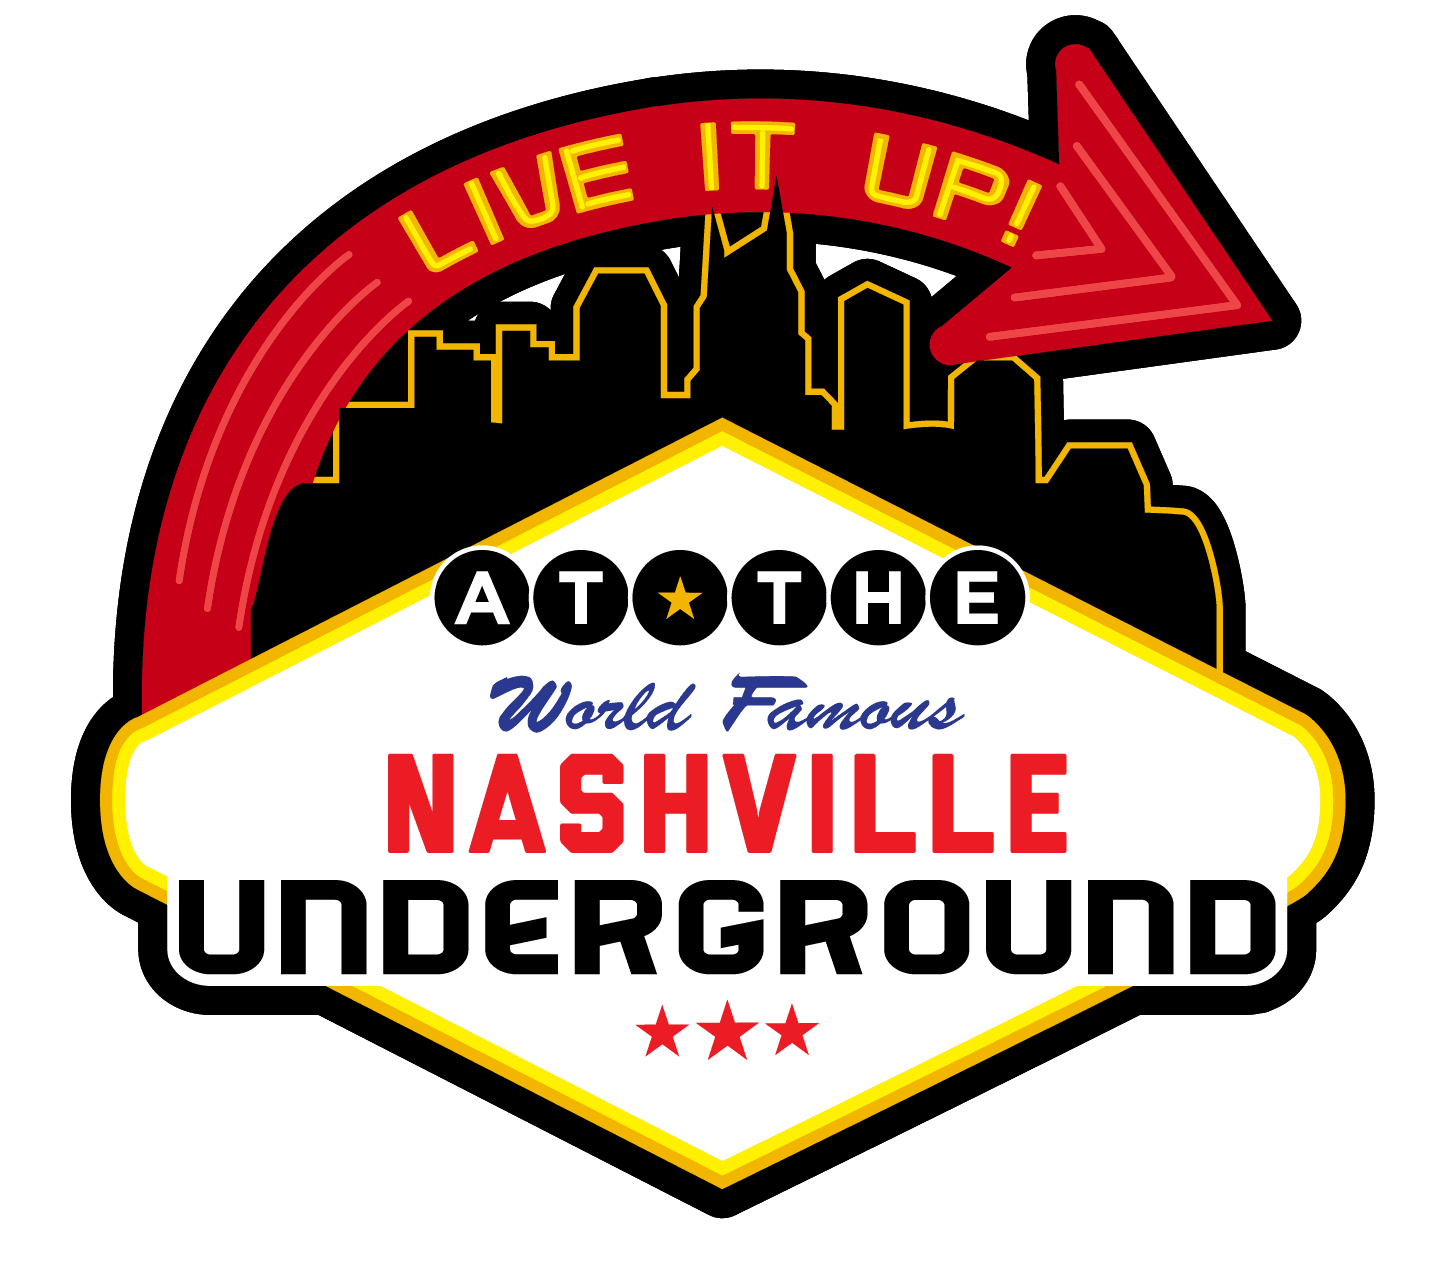 The Nashville Underground